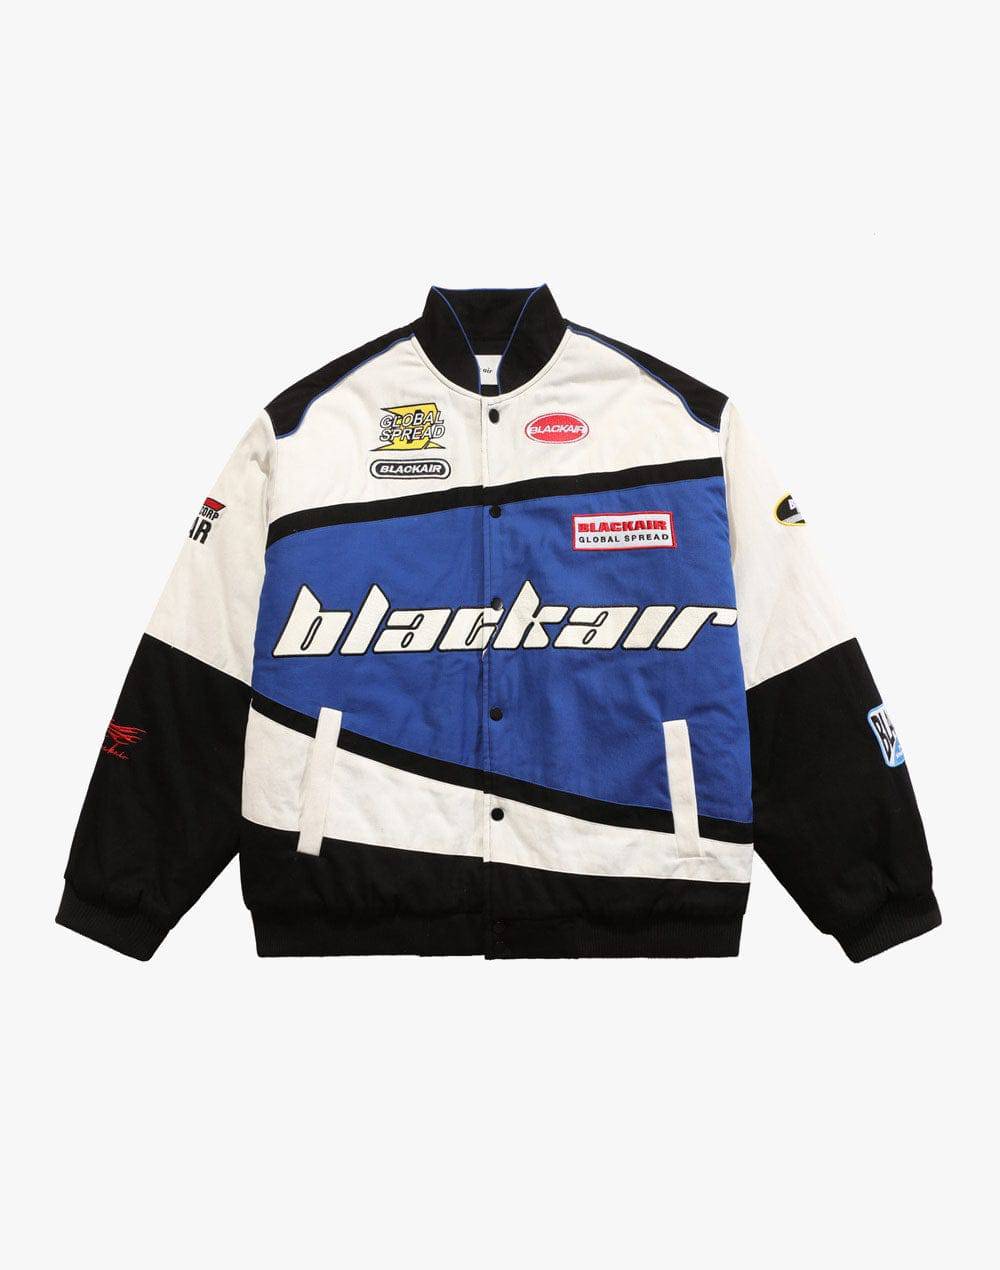 Blackair Racing Jacket | Primo Collection